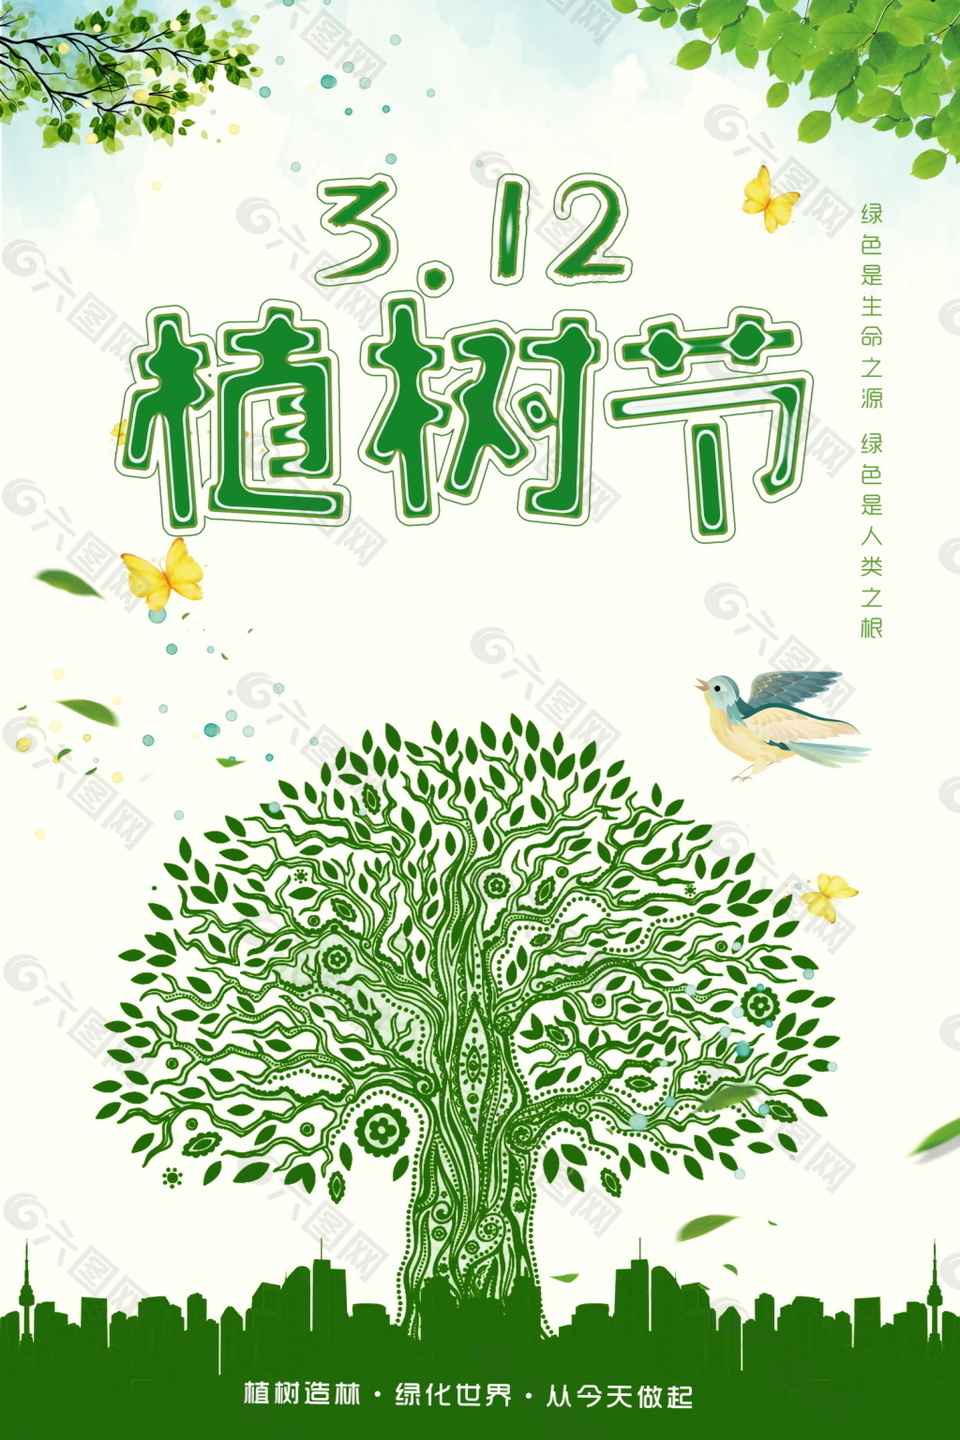 公益植树节海报背景设计